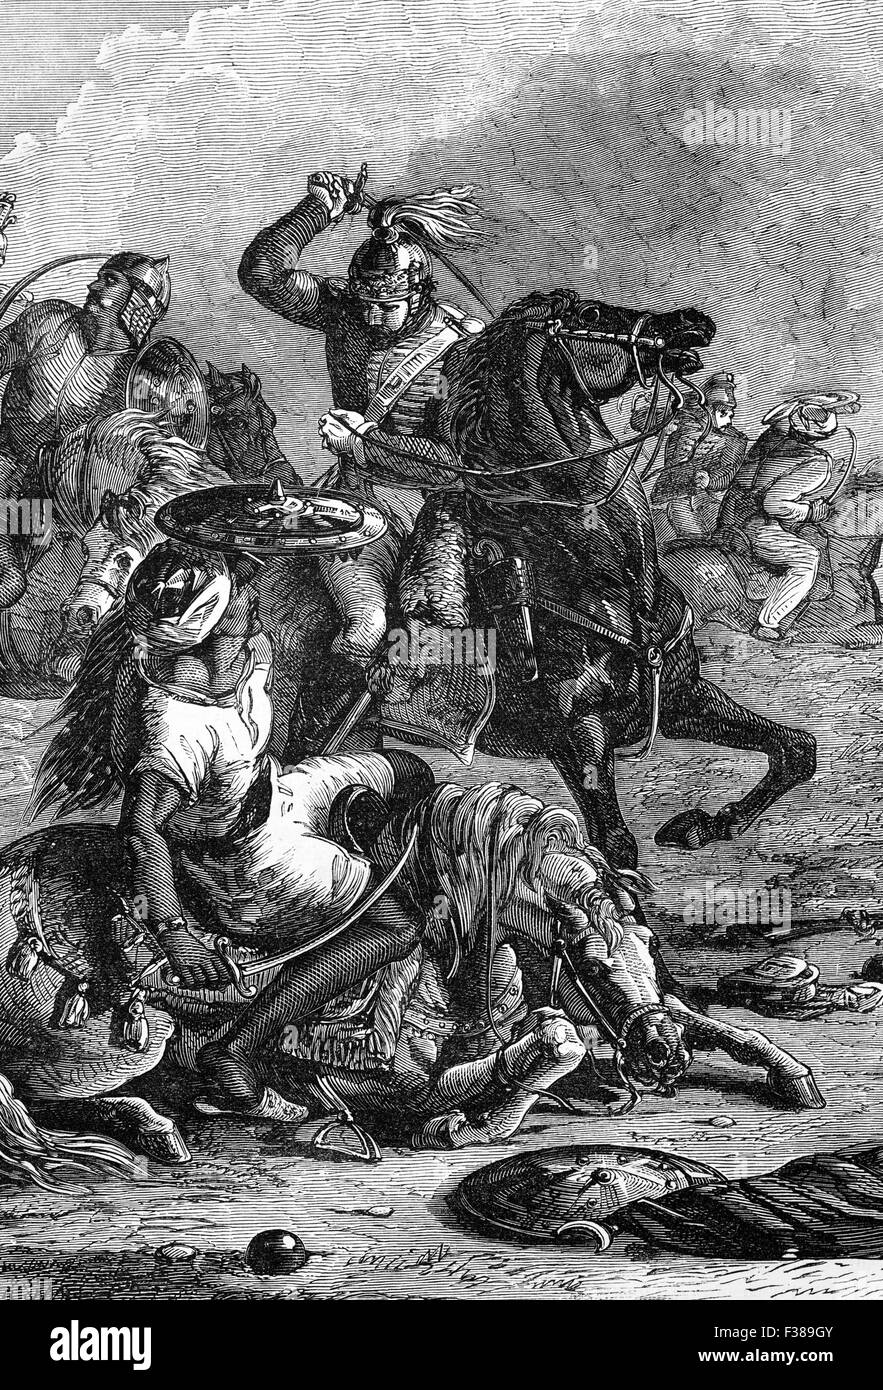 Die Schlacht von Assaye war, dass eine große Schlacht des zweiten Anglo-Maratha Krieges zwischen der Maratha Konföderation und die Britische Ostindien-Kompanie kämpfte. Es ereignete sich am 23. September 1803 in der Nähe von Assaye in Westindien, wo eine Unterzahl indischen und britischen Kraft unter dem Kommando von Generalmajor Arthur Wellesley (der spätere Herzog von Wellington) eine kombinierte Konföderierten Armee von Daulat Scindia und Raja Berar besiegt. Stockfoto